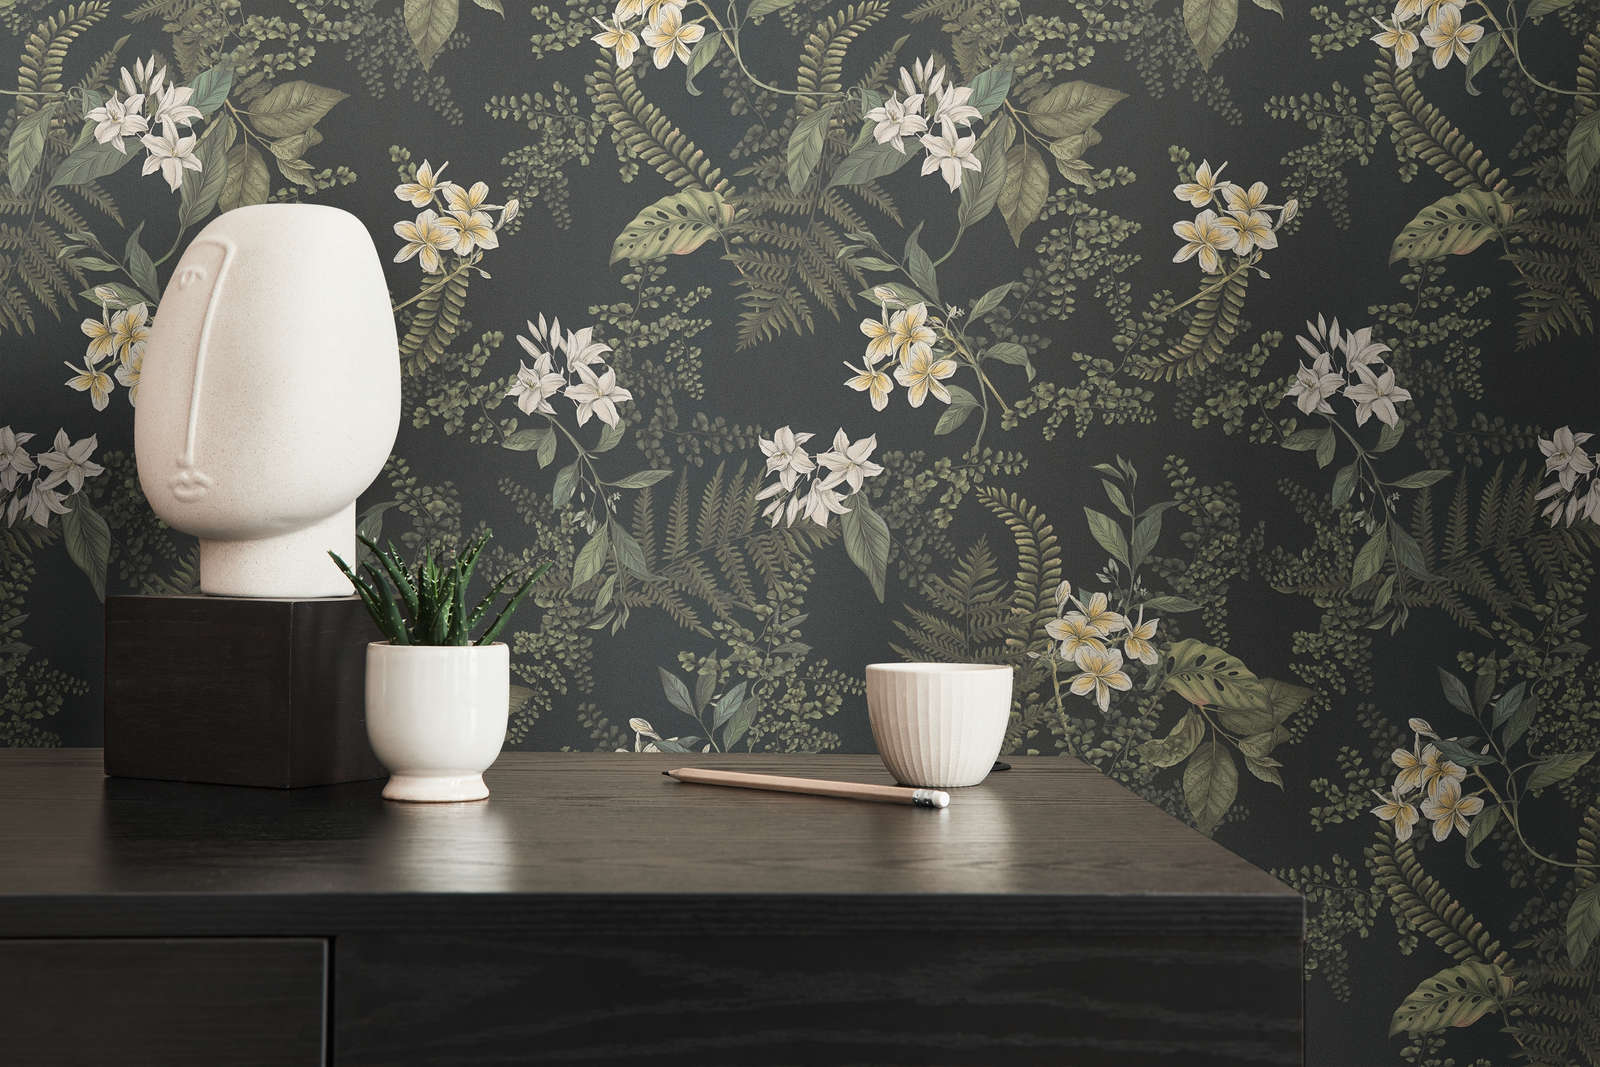             papier peint moderne floral avec fleurs & herbes structuré mat - noir, vert foncé, blanc
        